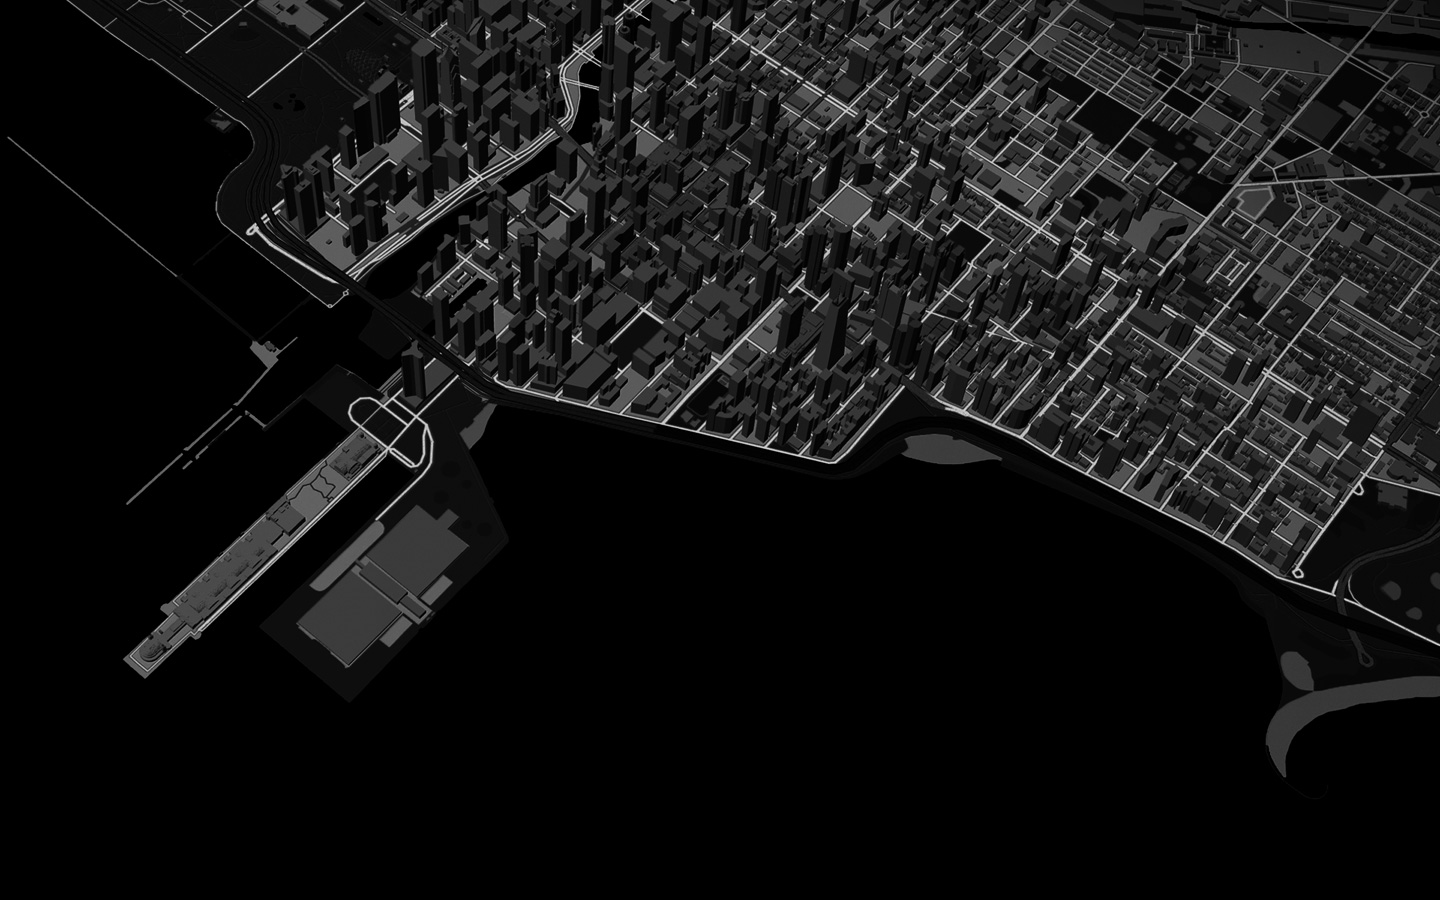 Hình động về một đường biểu thị lộ trình của người chạy bộ qua chế độ xem Bản Đồ 3D về cảnh quan thành phố